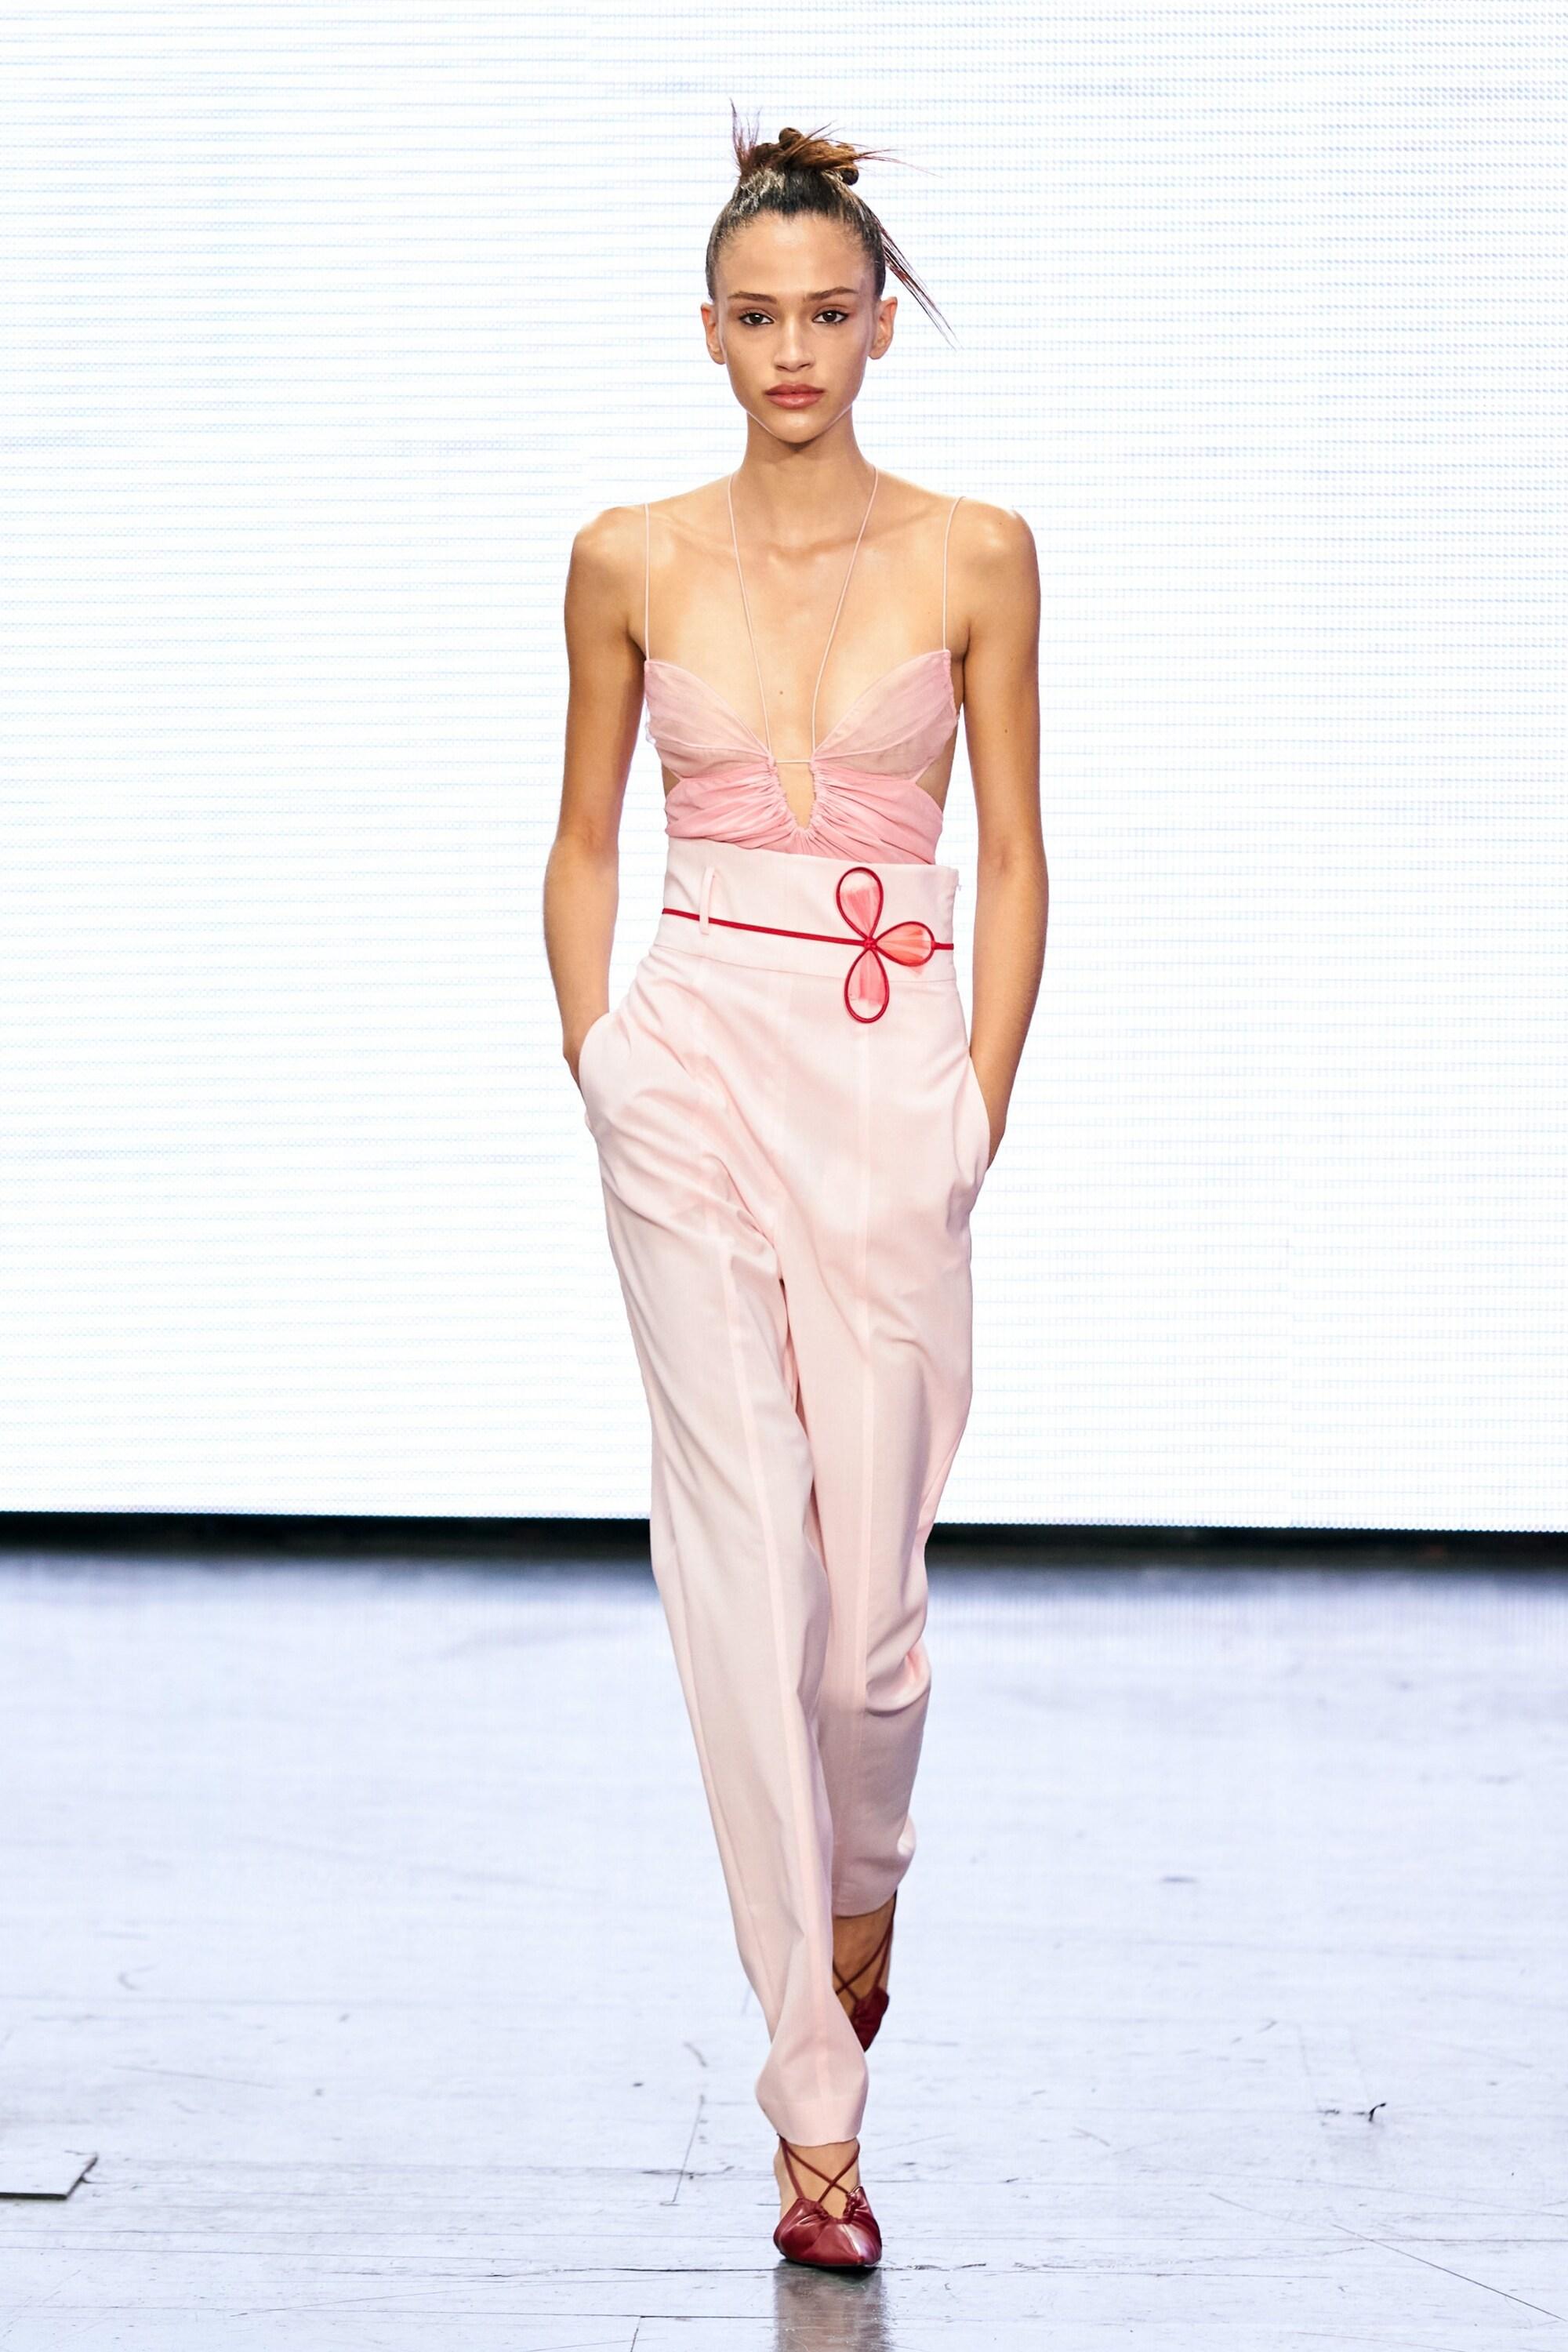 Damen Bekleidung Dessous Bodies Nensi Dojaka Seide Body aus einem Seidengemisch in Pink 